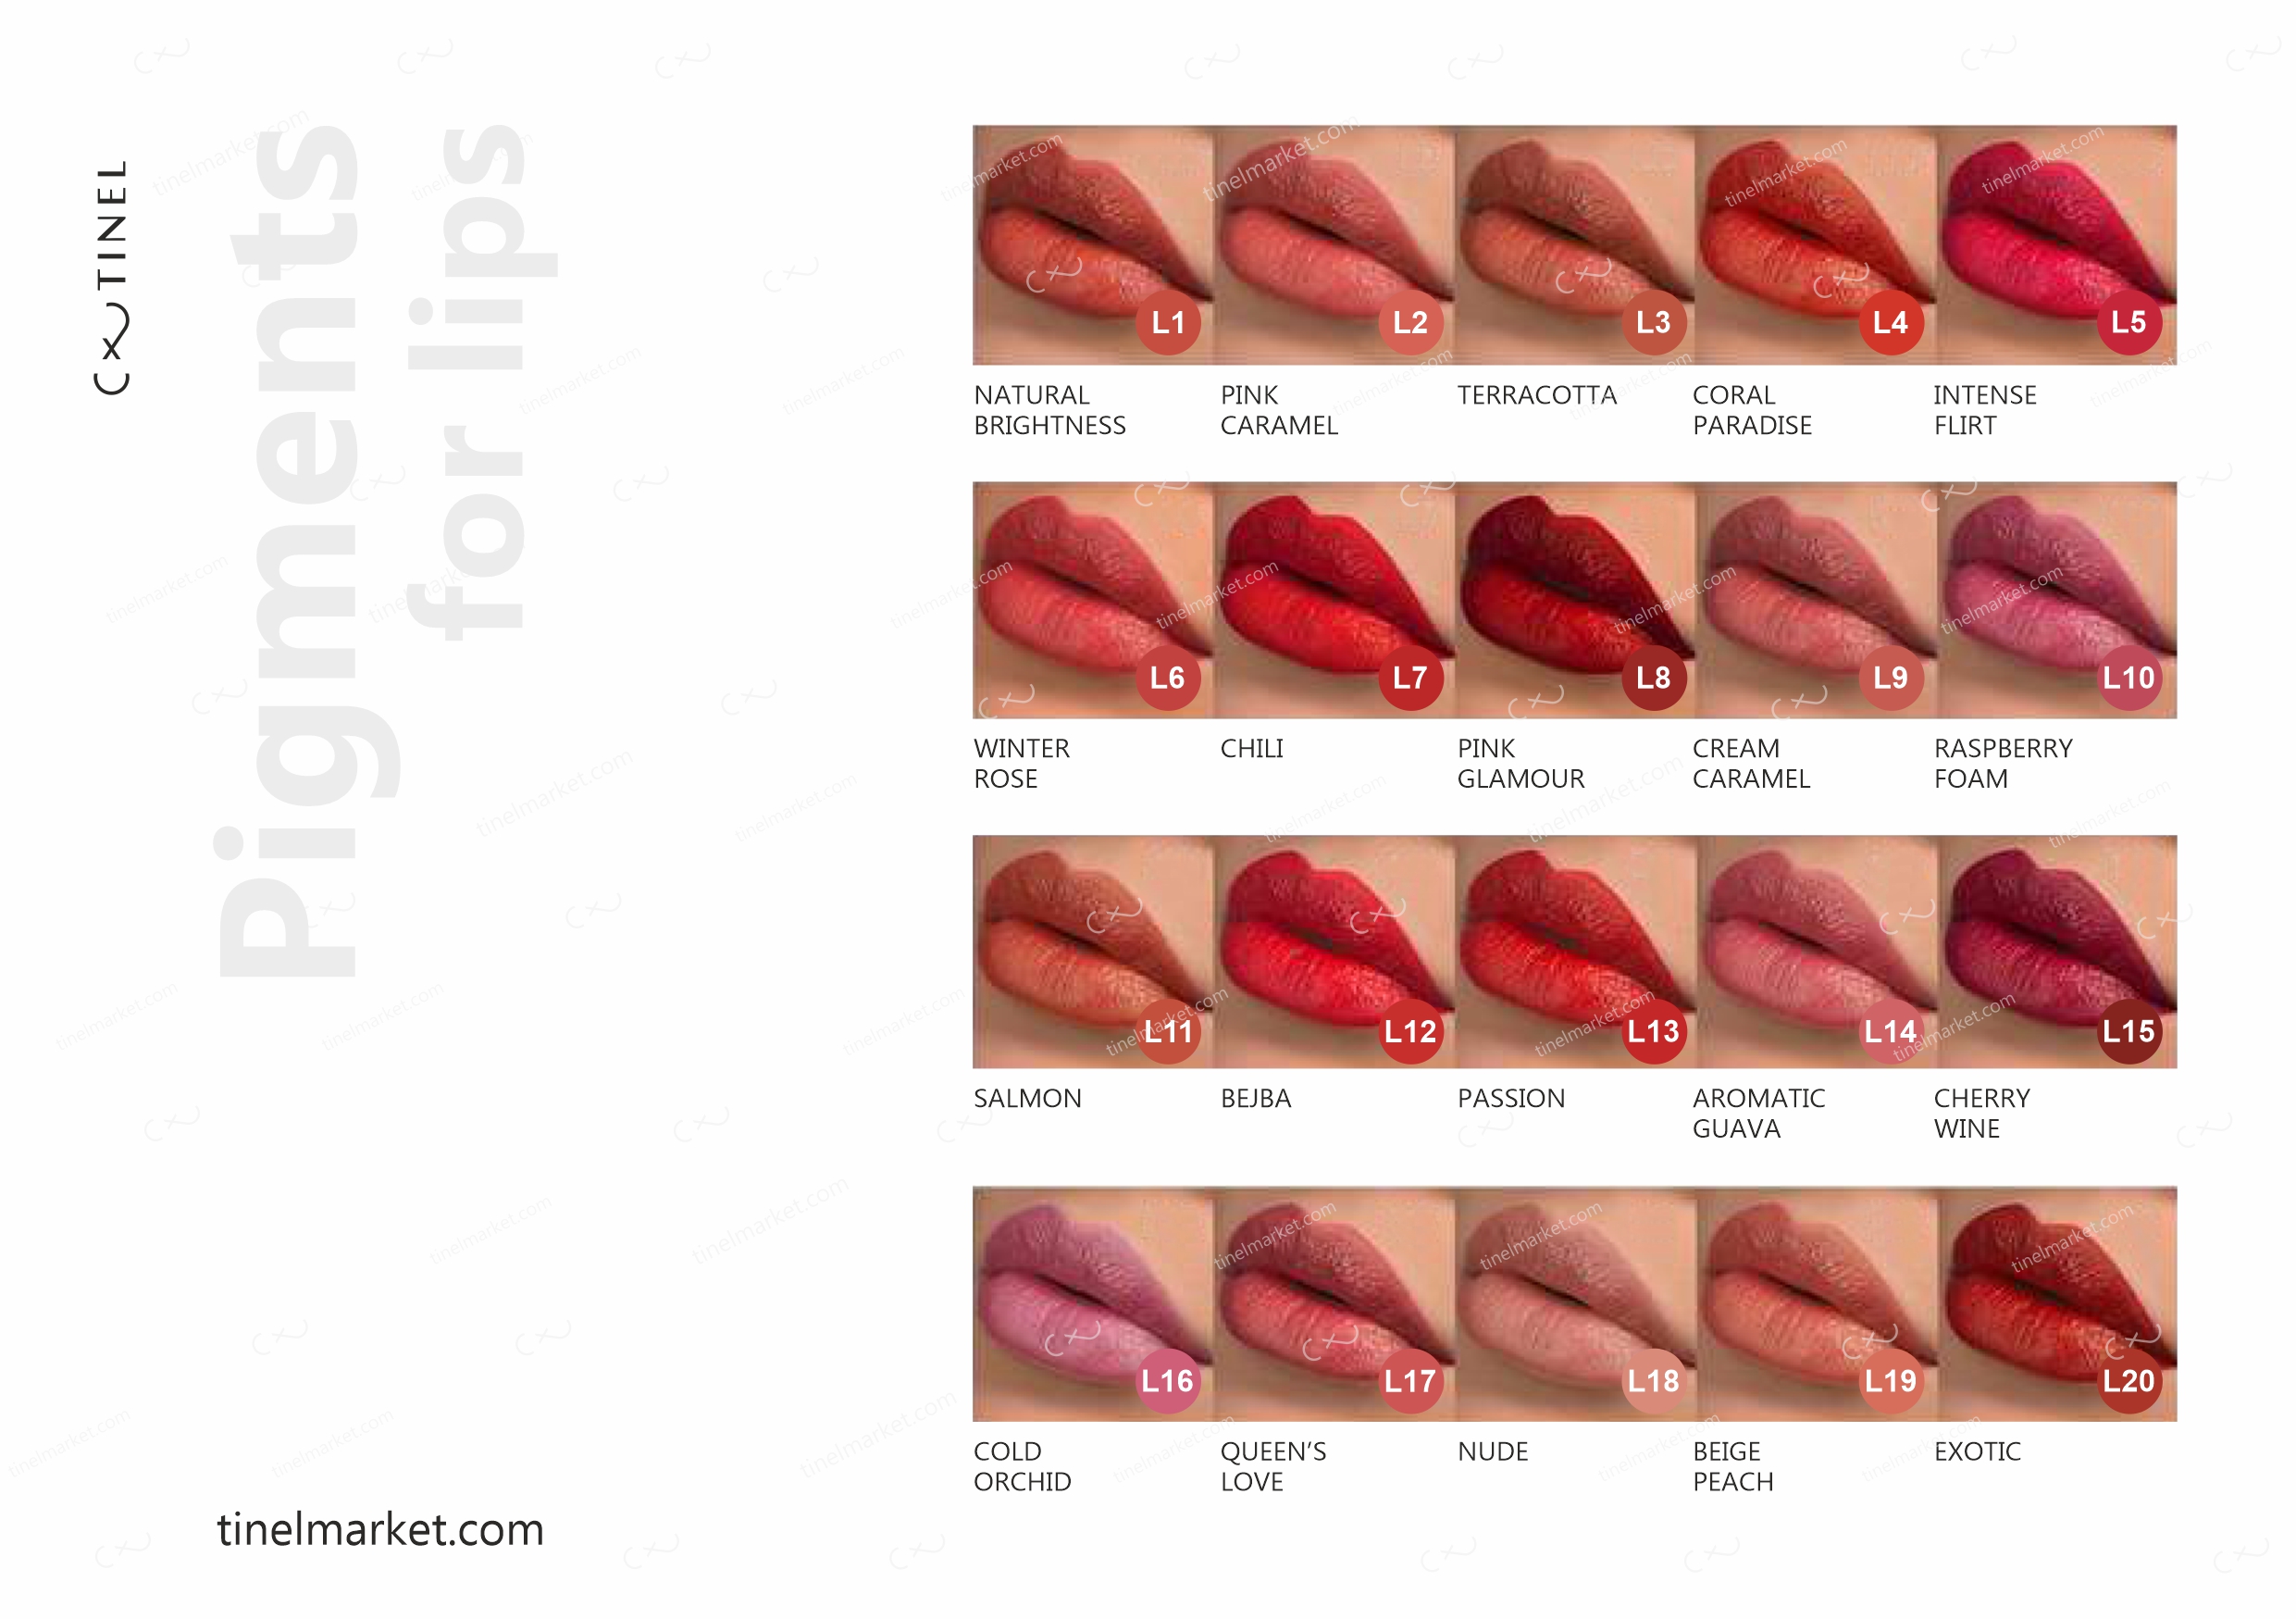 Tinel-Pigmente für Lippen